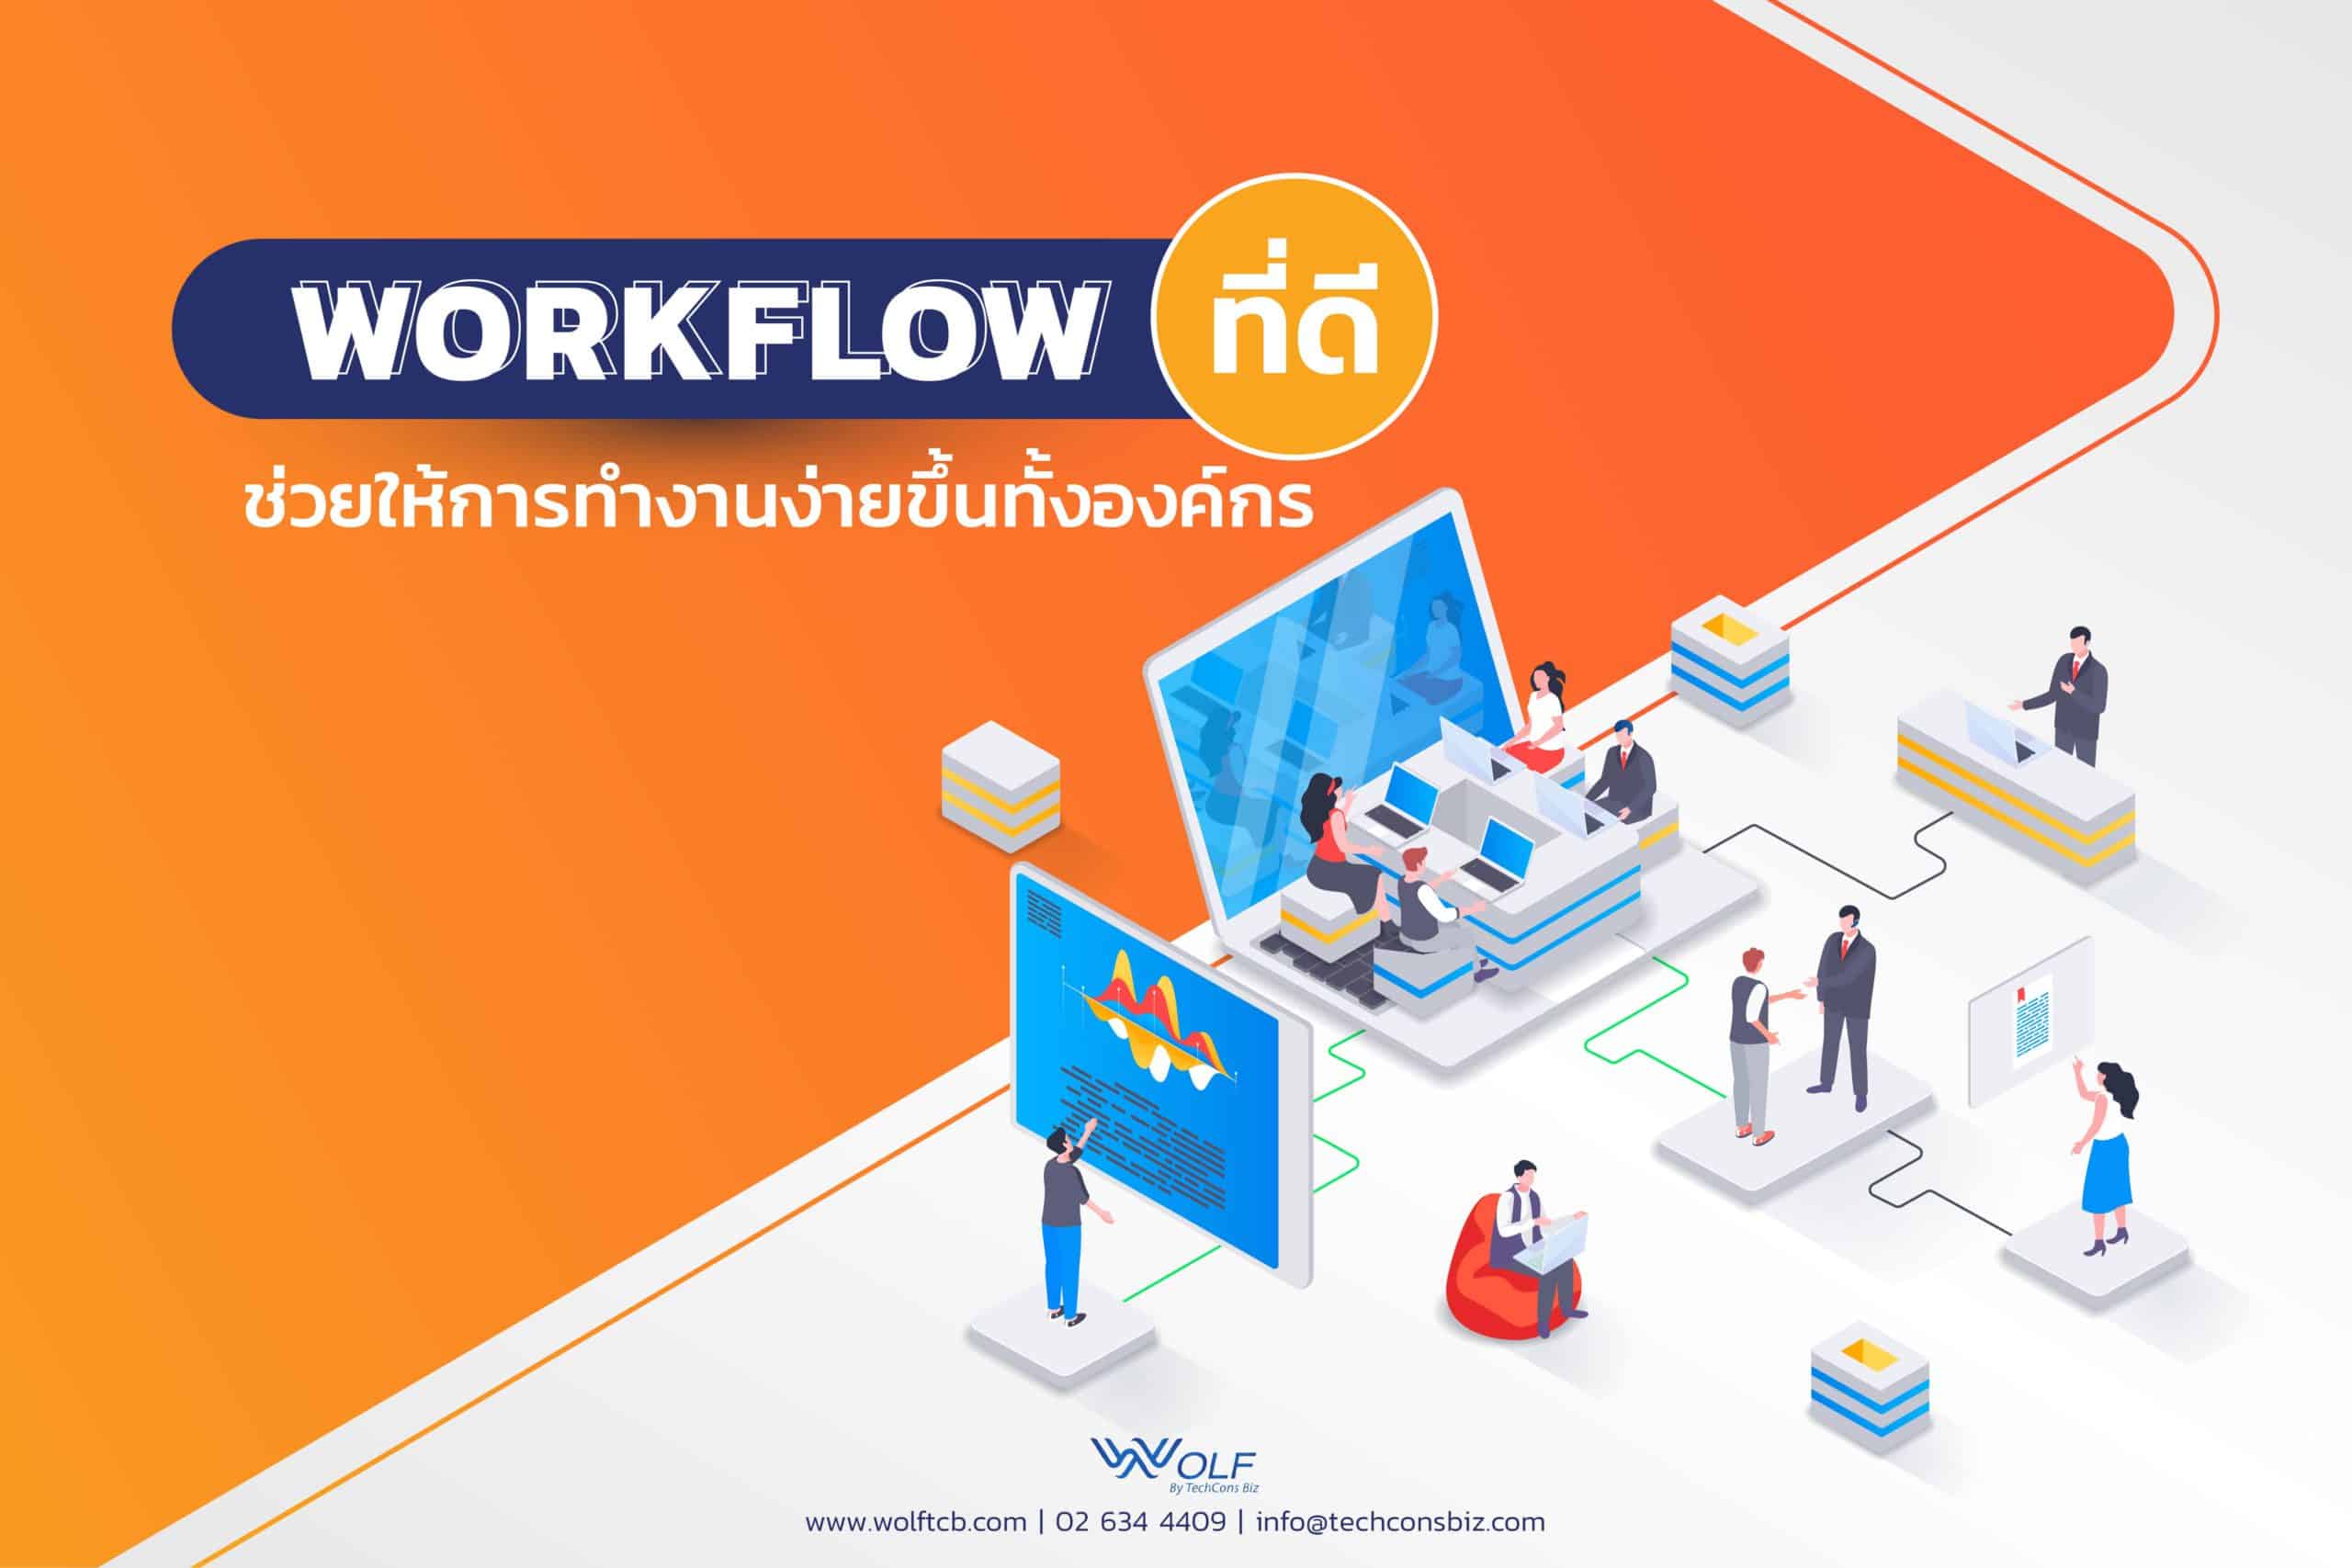 Workflow ที่ดีช่วยให้การทำงานง่ายขึ้นทั้งองค์กร